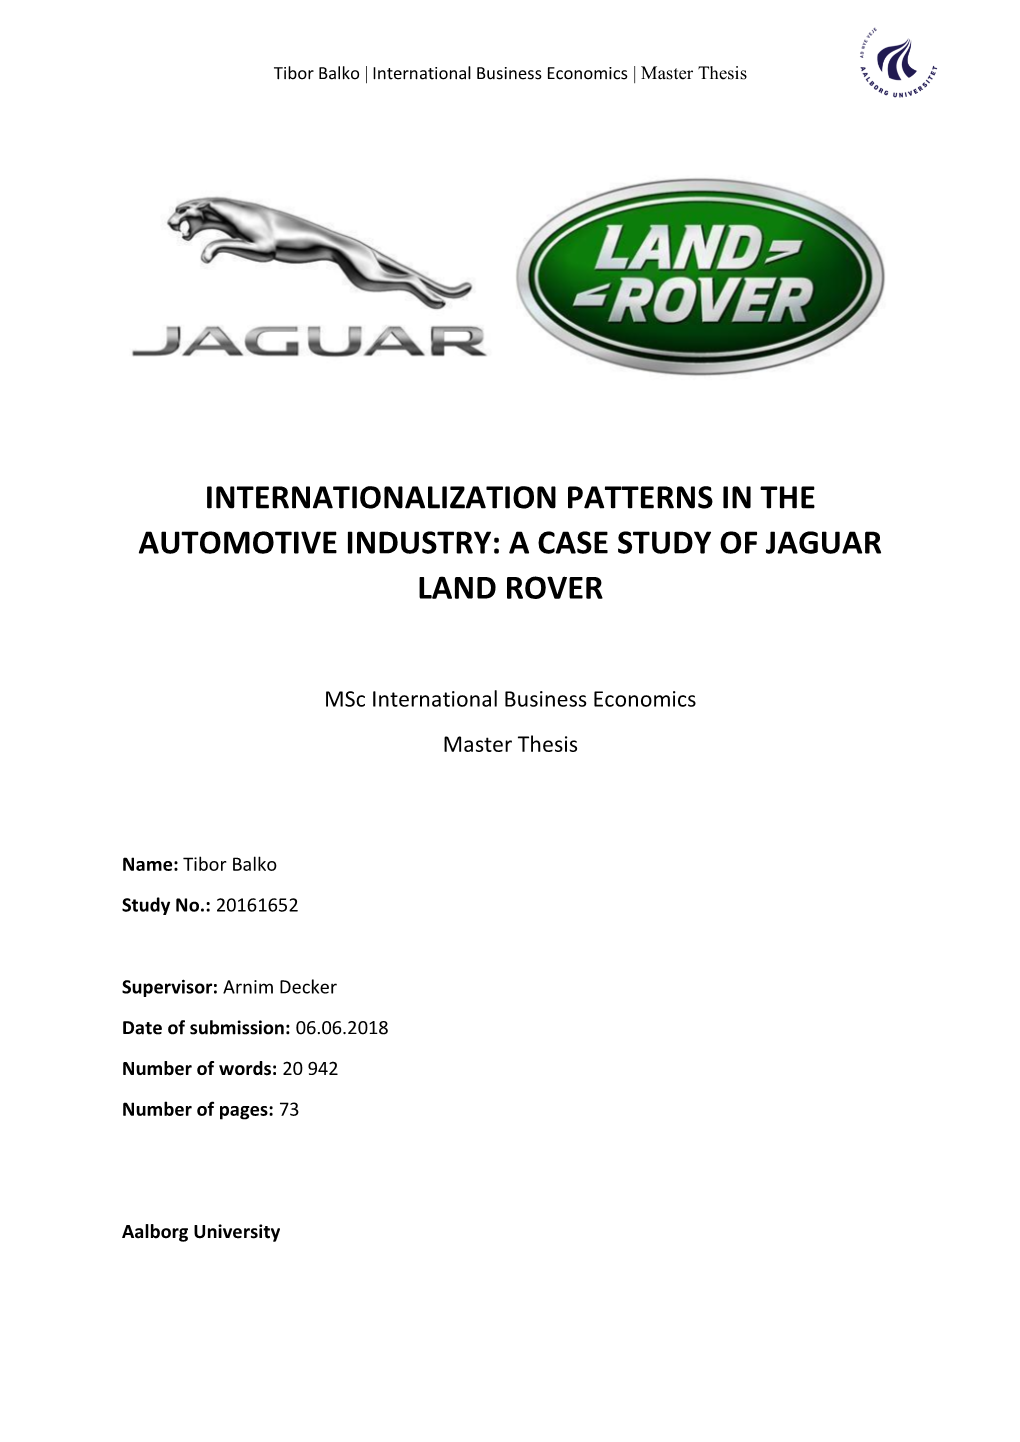 A Case Study of Jaguar Land Rover